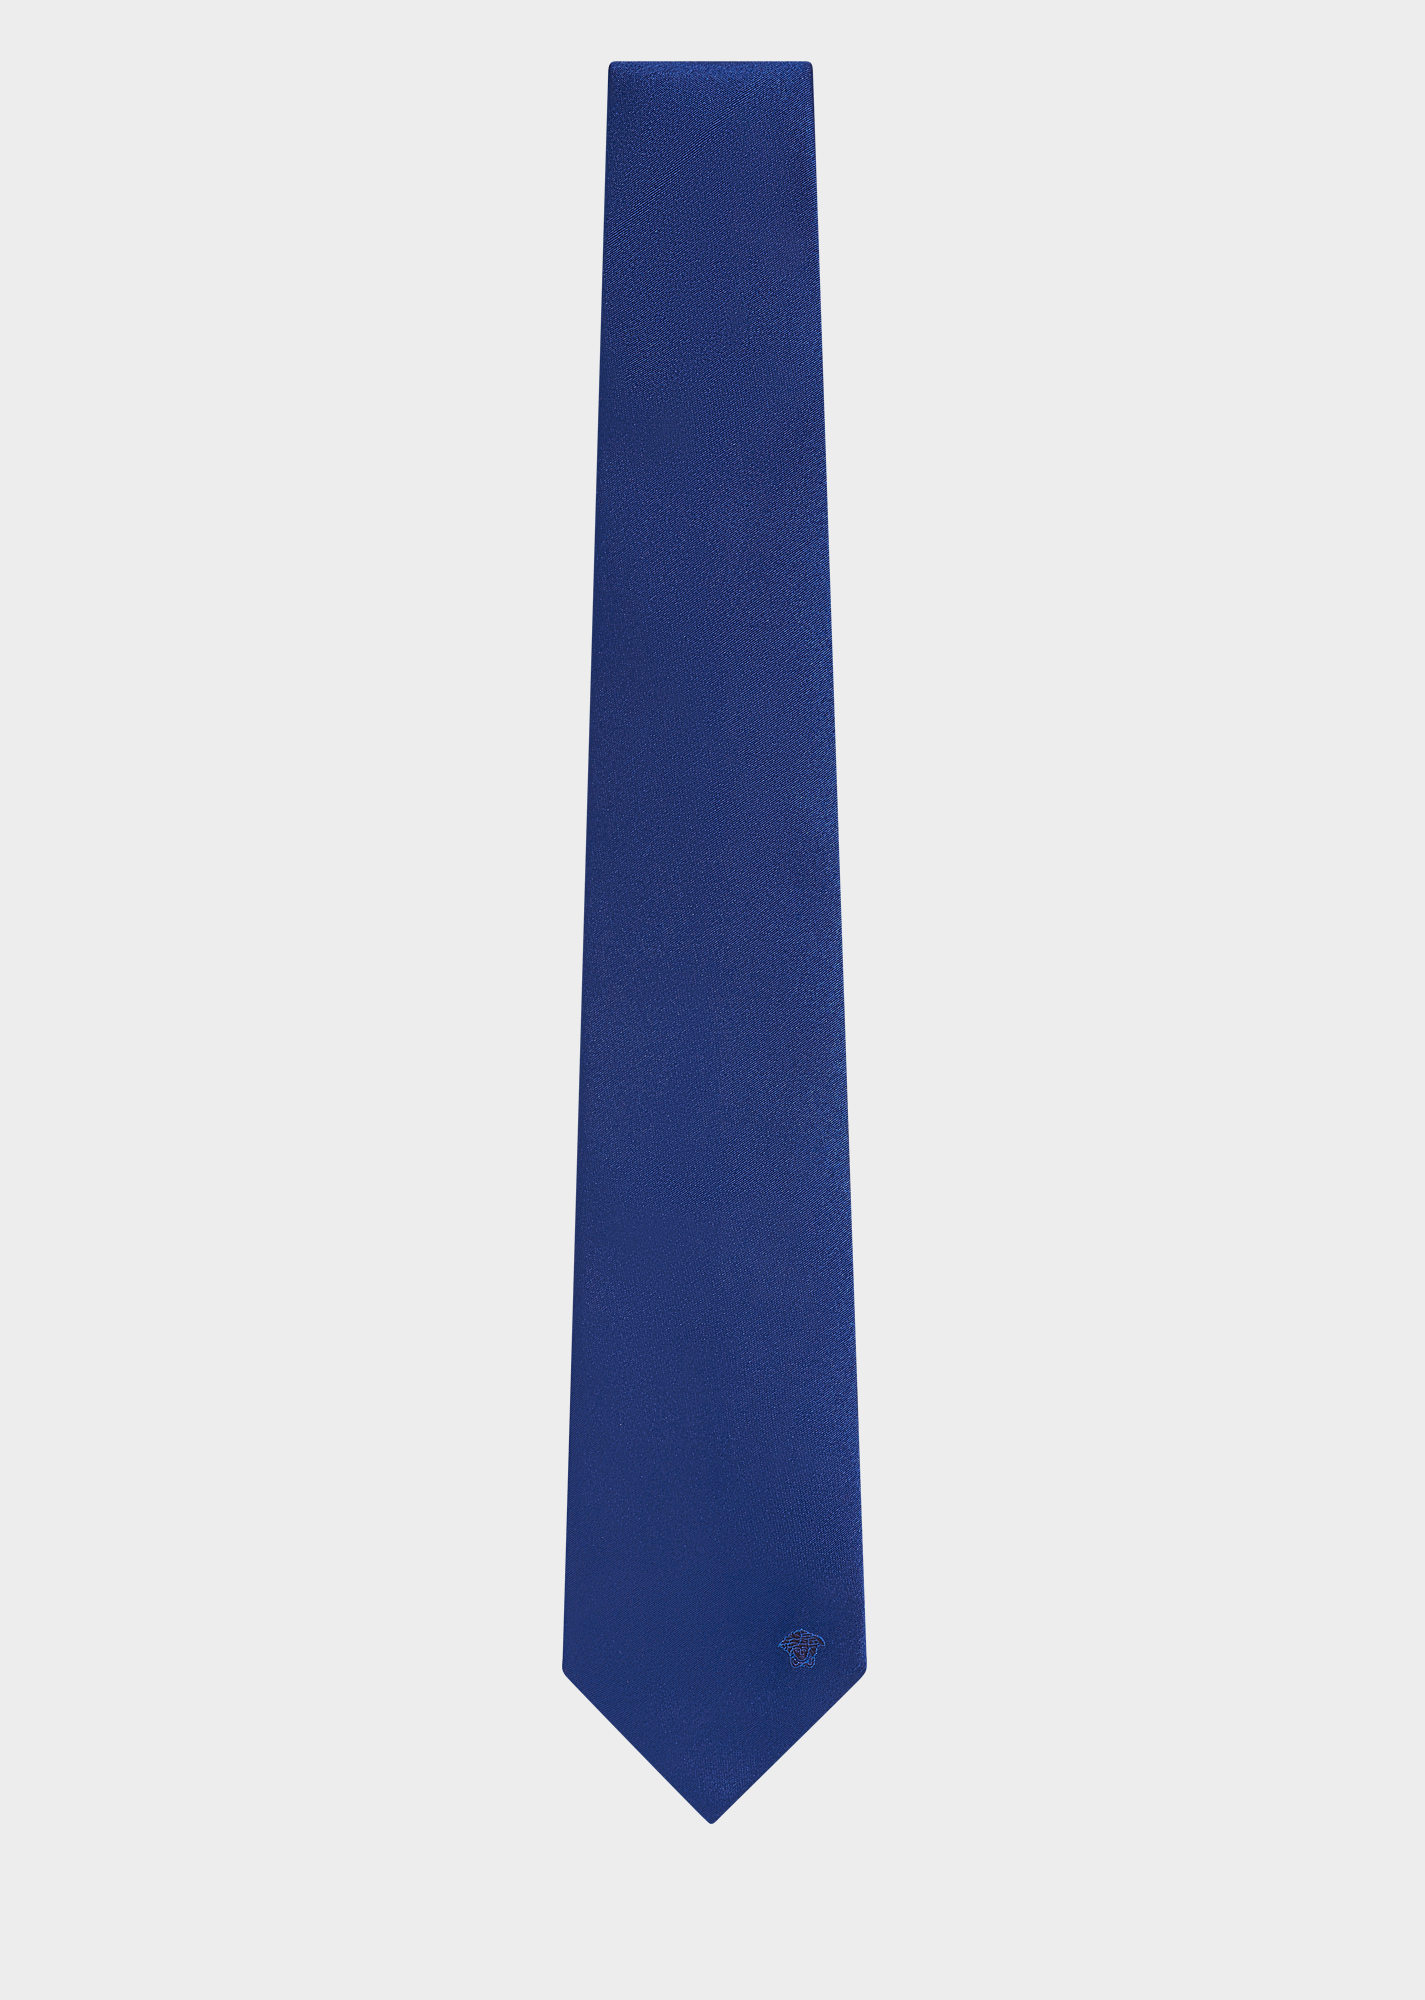 Necktie Clipart ClipArt Best